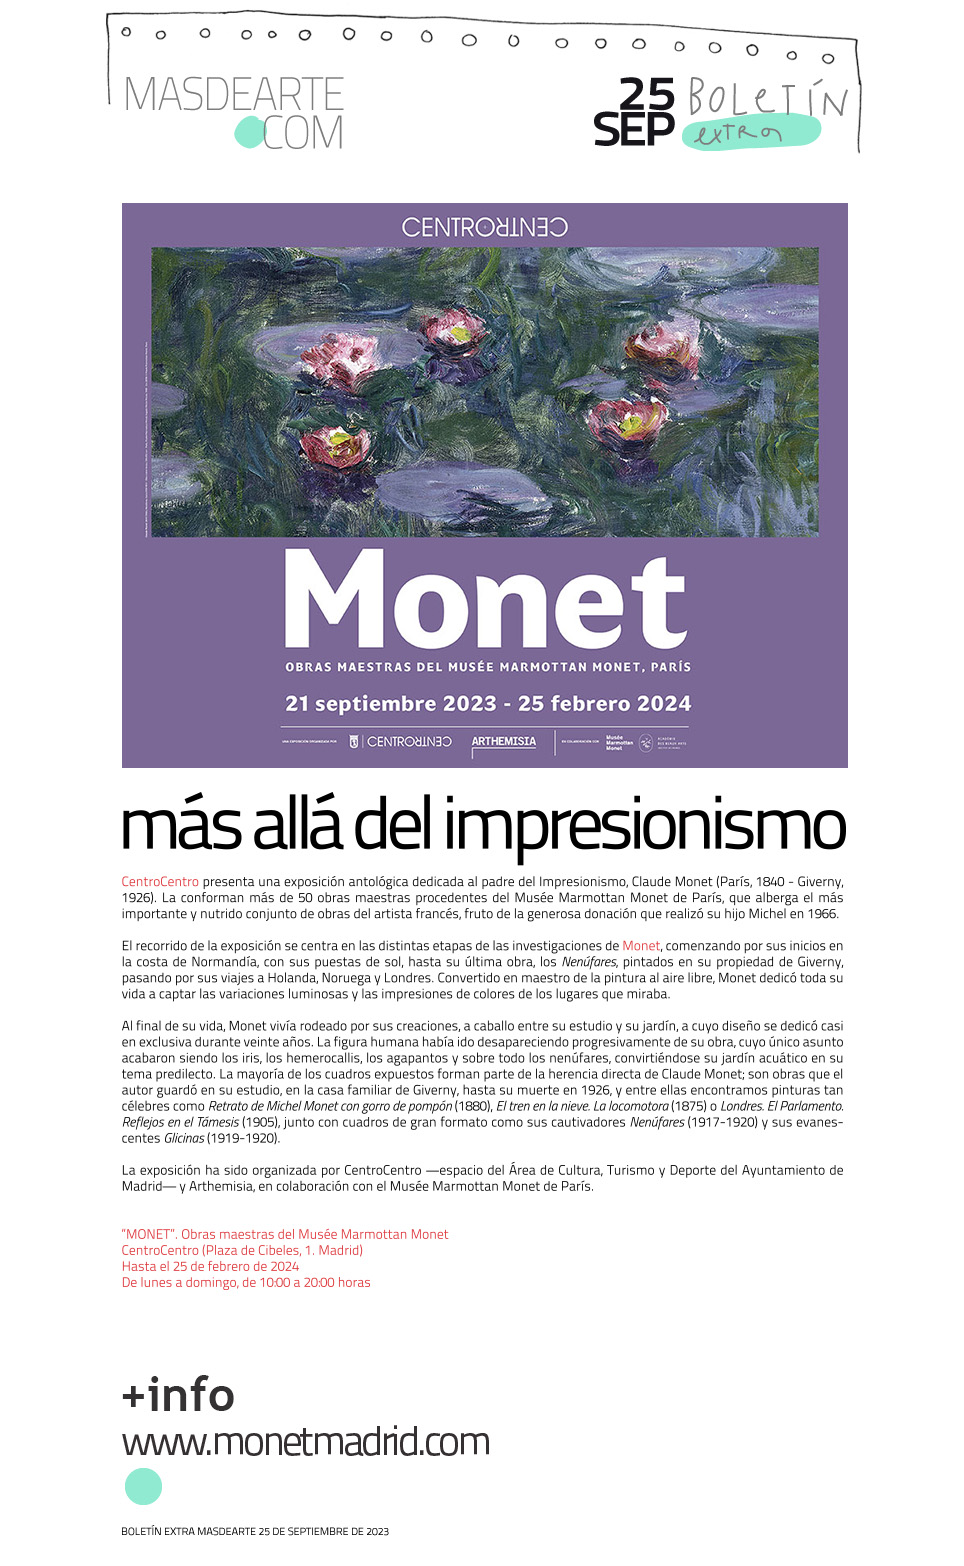 Extra masdearte: gran exposición de Monet en CentroCentro